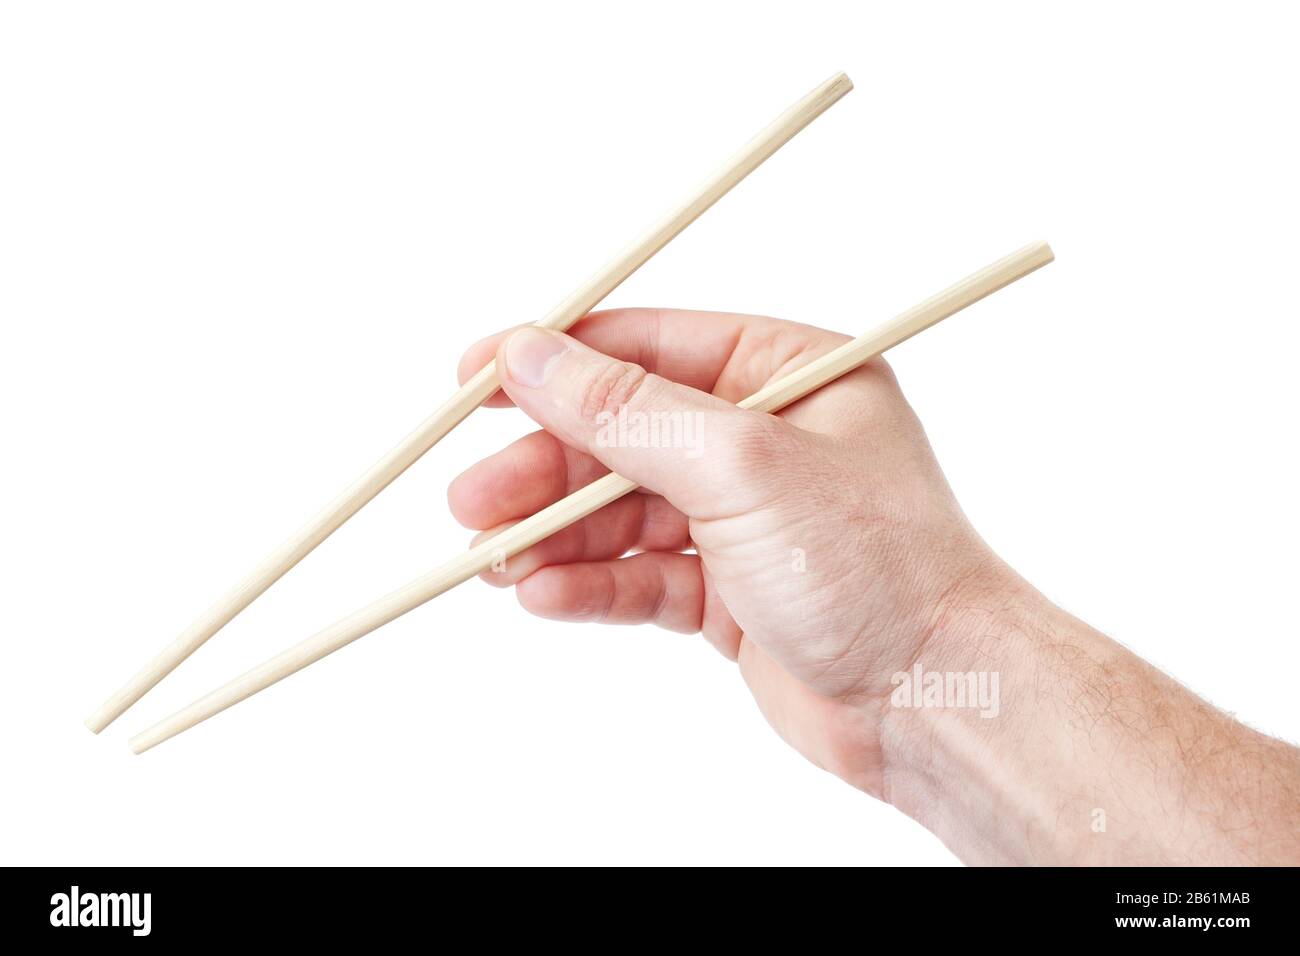 Des baguettes chinoises, dans la main de l'homme pour les sushis. Sur fond blanc. Banque D'Images